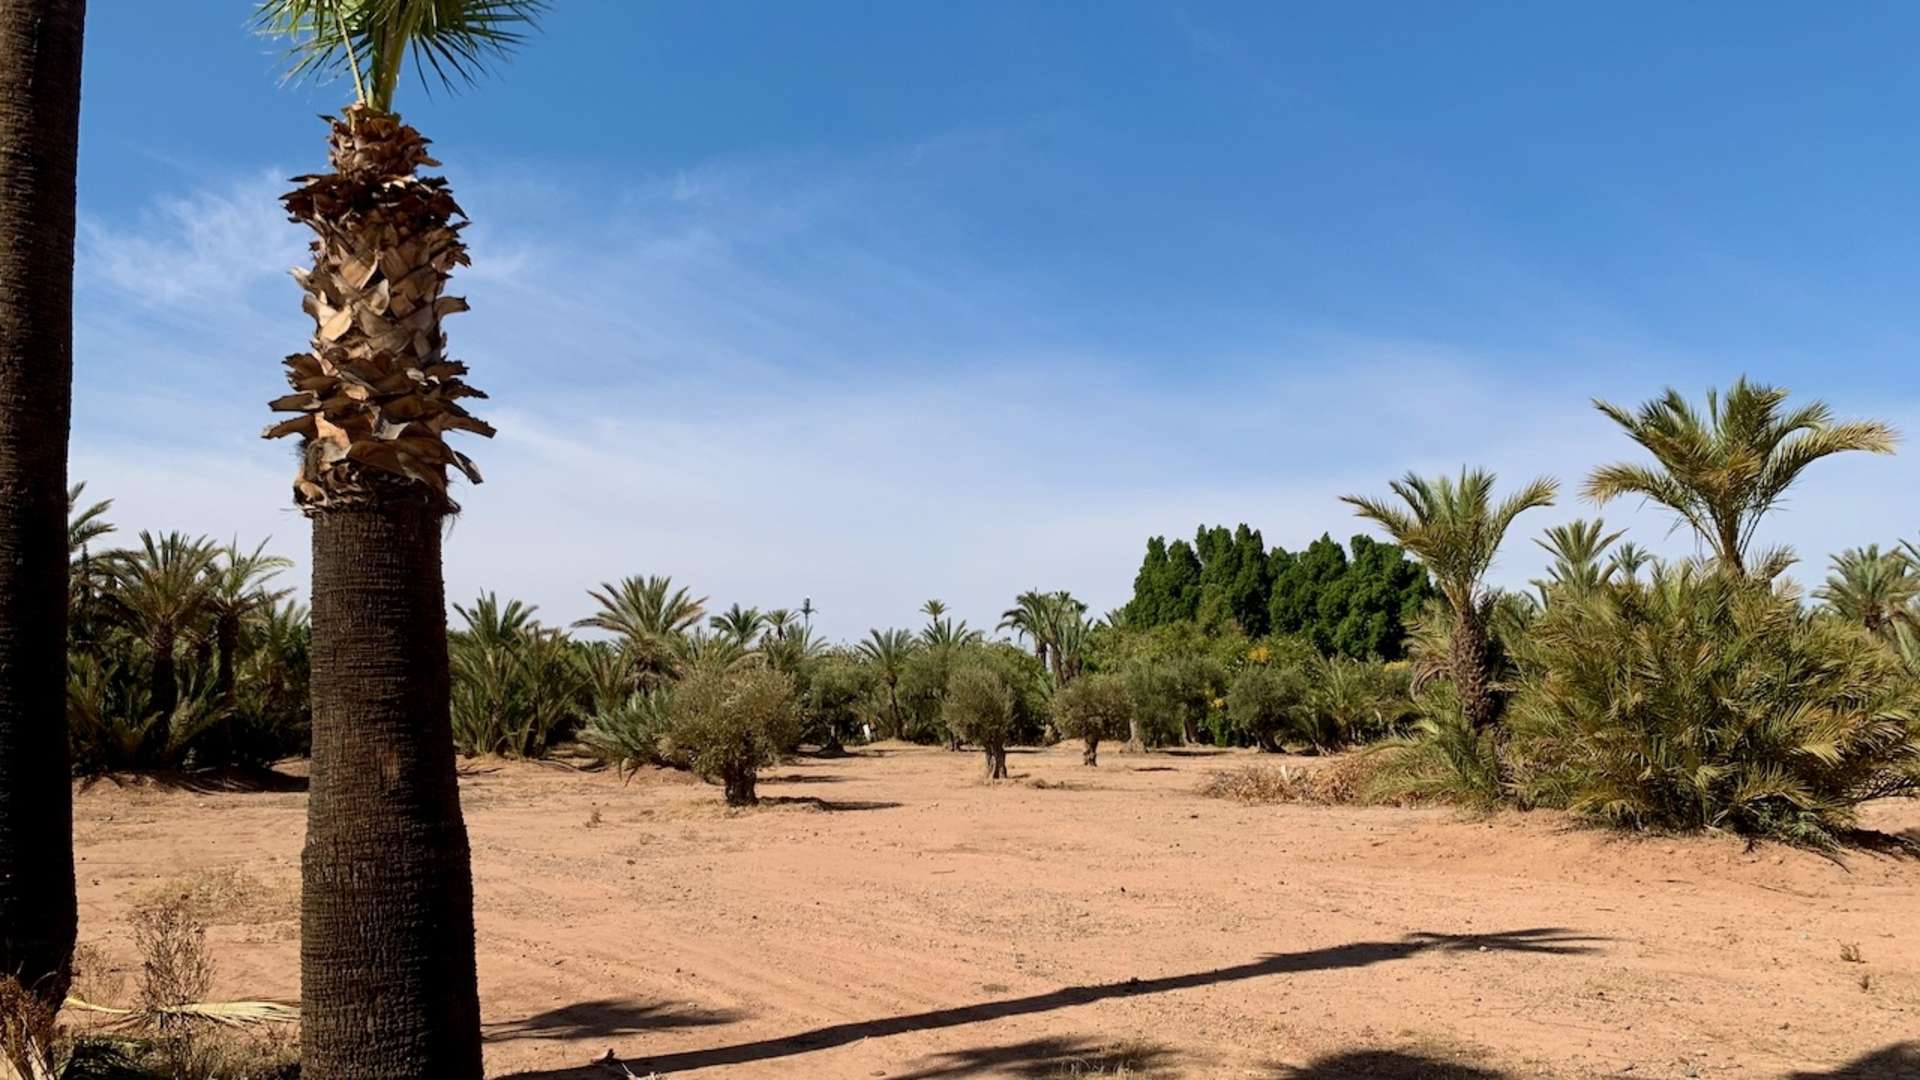 Vente,Terrains & Fermes,Terrain titré pour villa au triangle d’or de la Palmeraie à Marrakech,Marrakech,Palmeraie